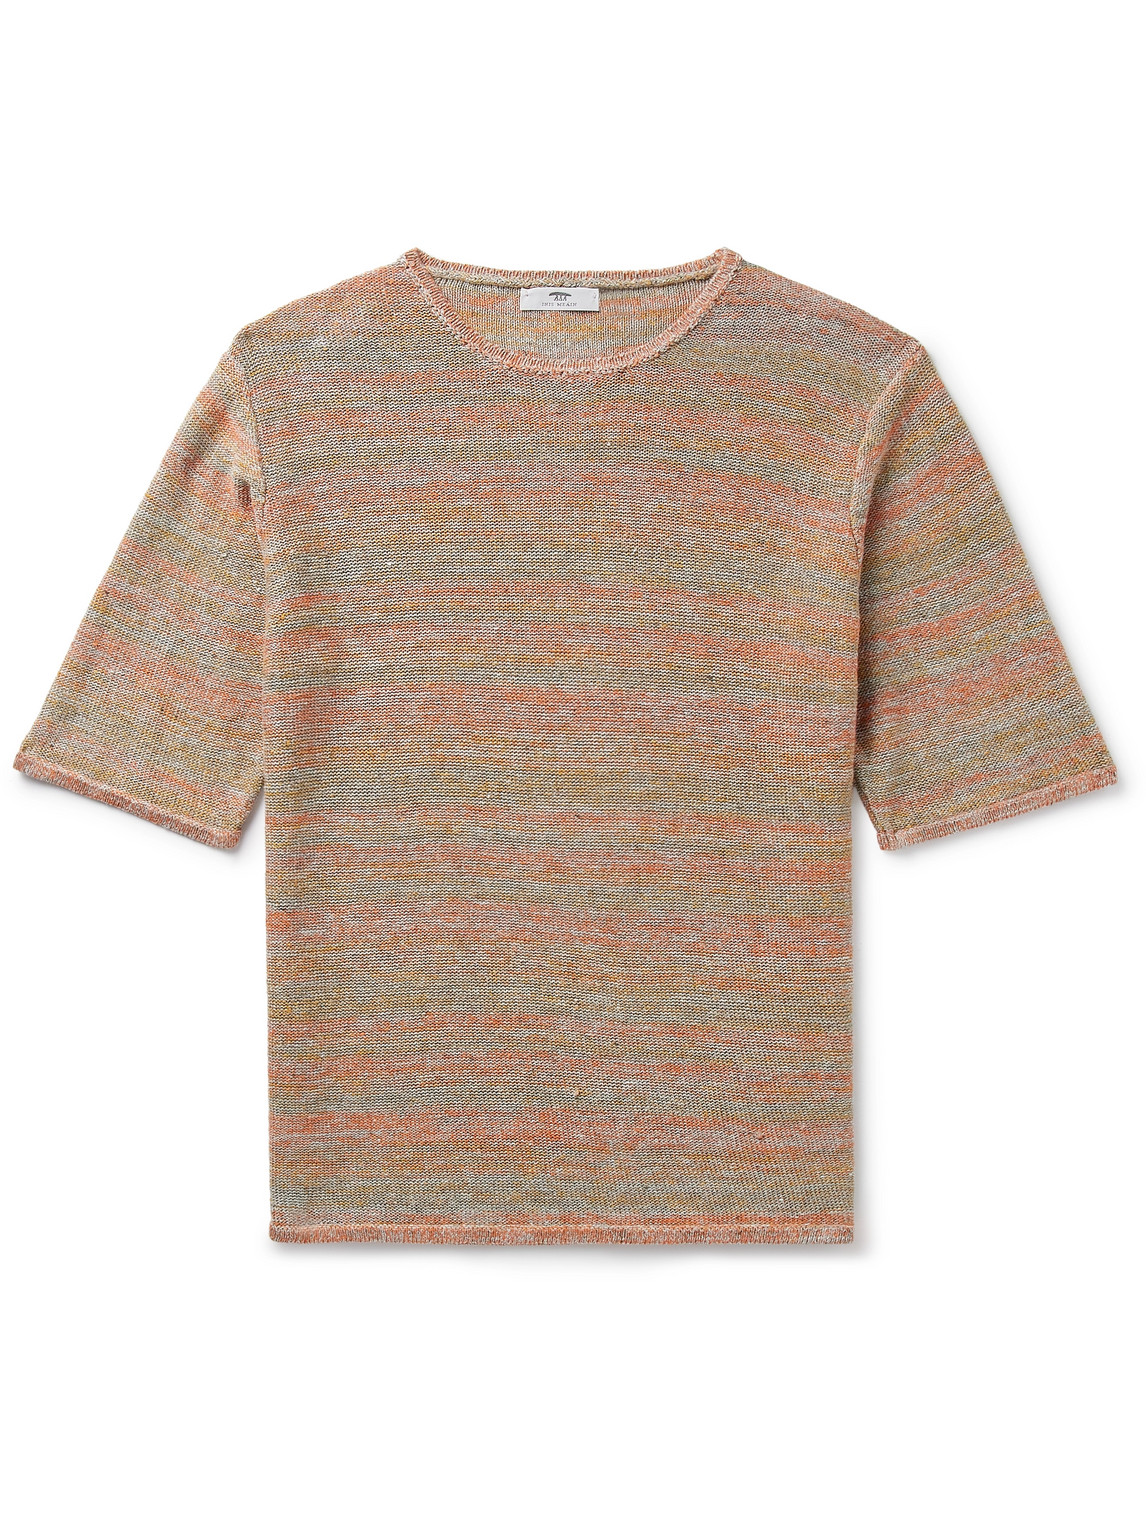 Inis Meáin Striped Linen T-Shirt